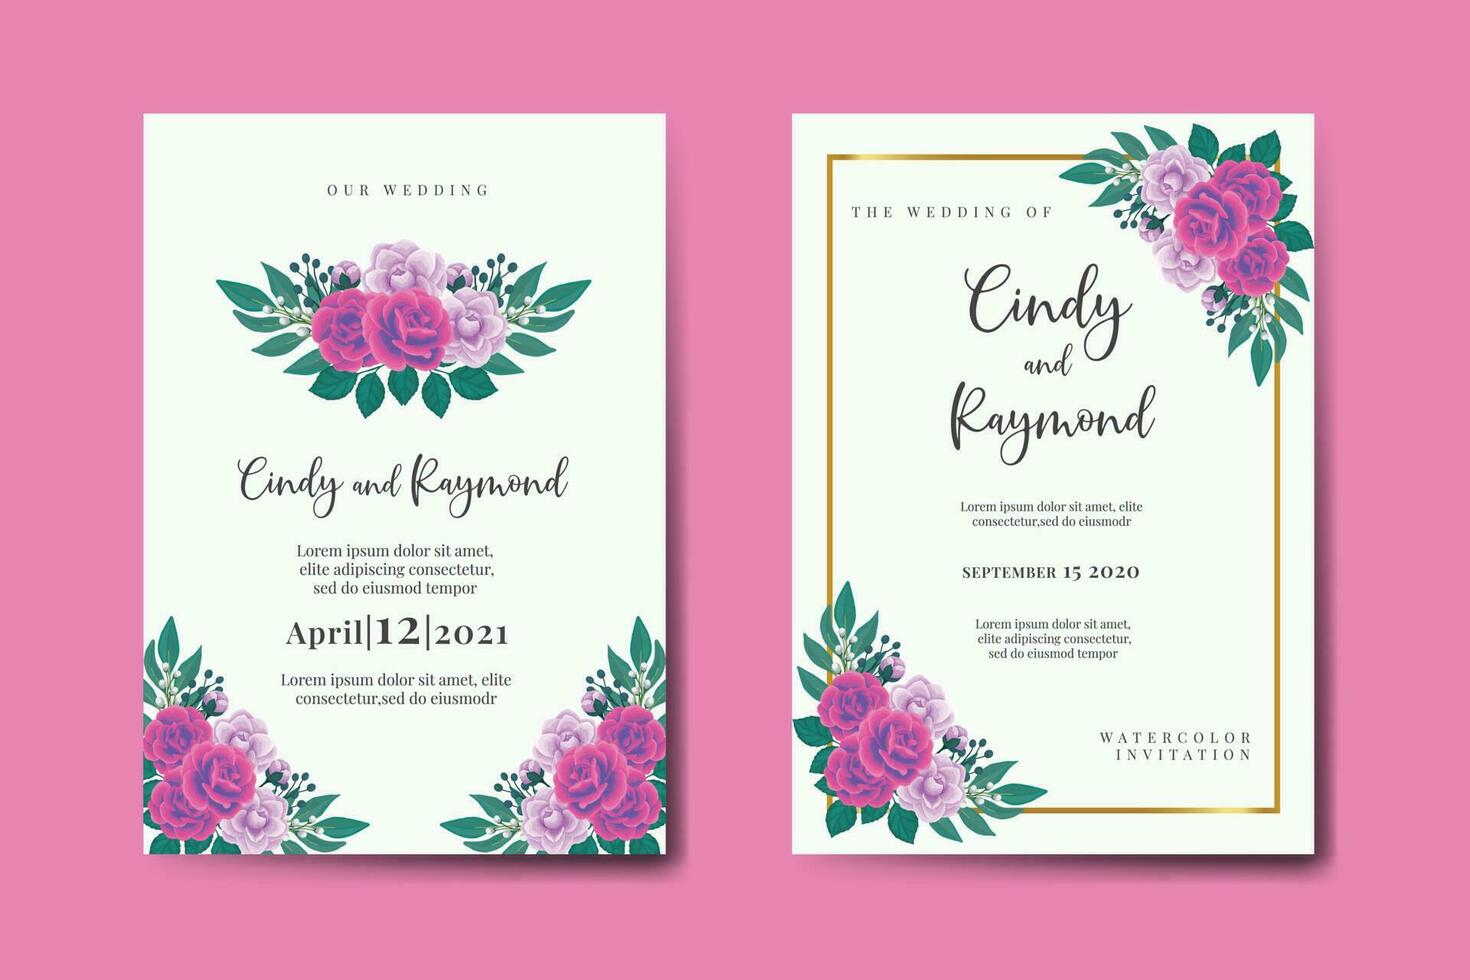 bruiloft uitnodiging kader set, bloemen waterverf digitaal hand- getrokken Purper anemoon bloem ontwerp uitnodiging kaart sjabloon vector